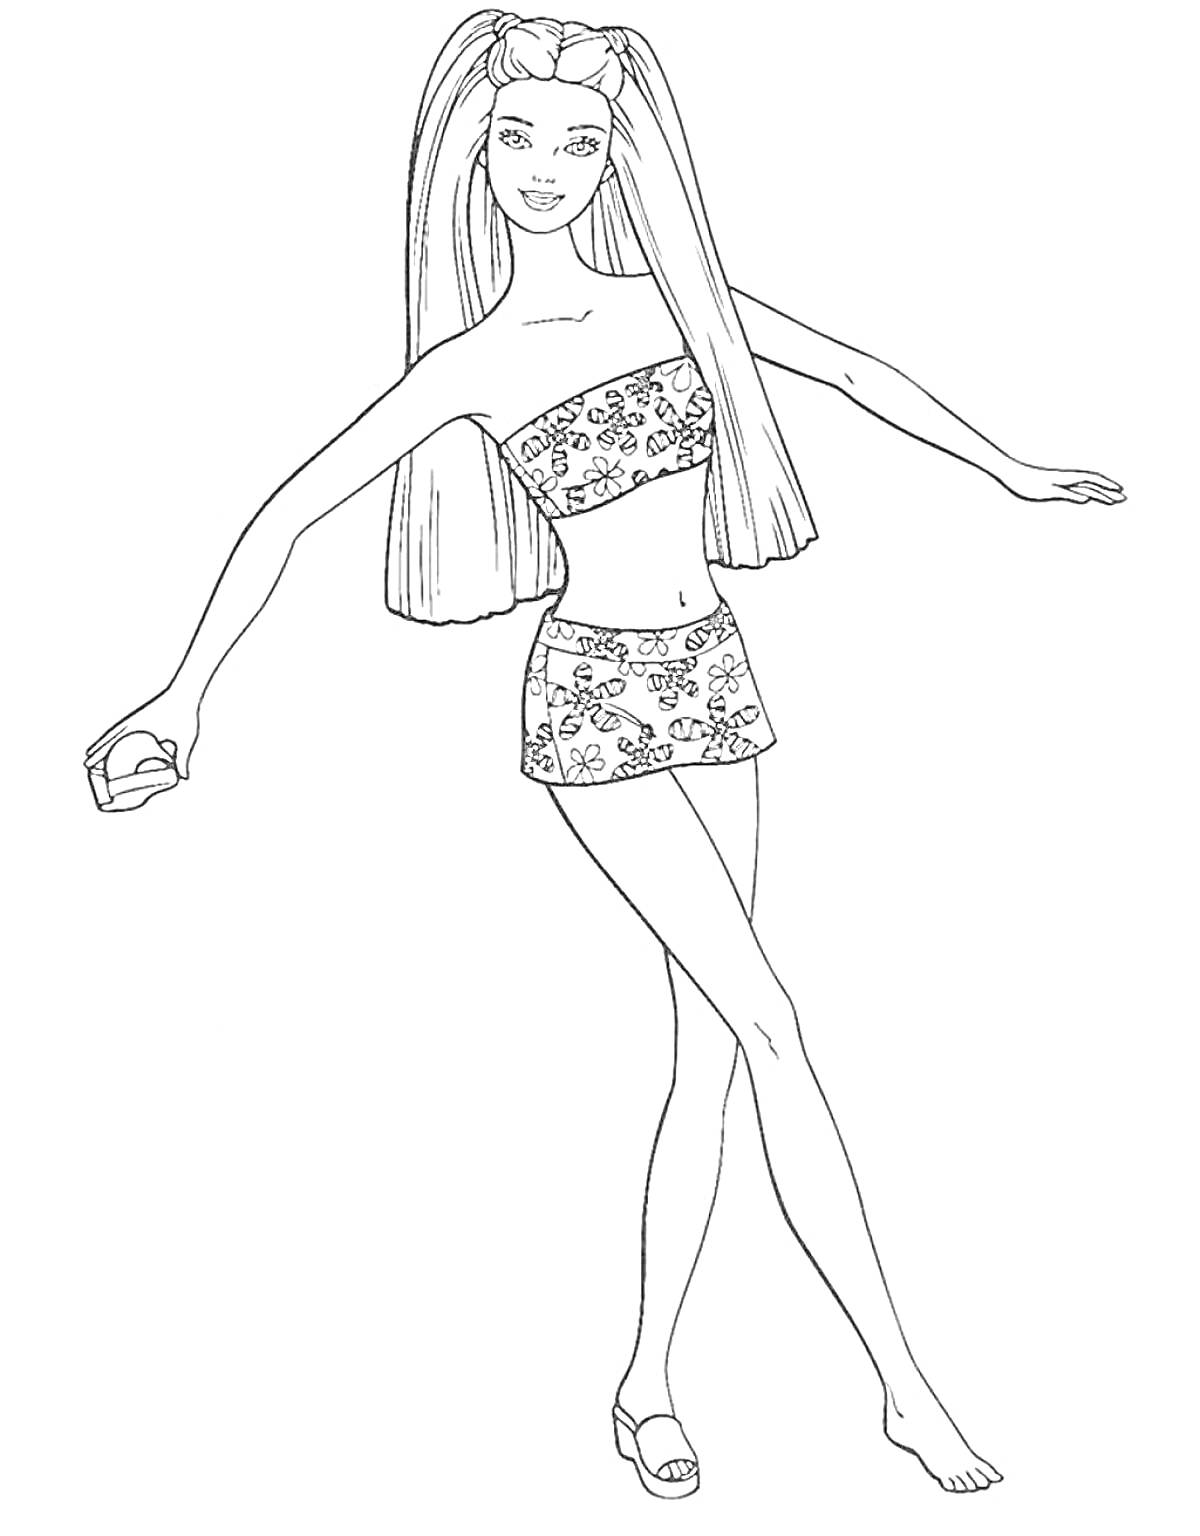 Раскраска Кукла Барби с длинными волосами в топе и юбке с цветочным узором, держит в руке предмет и стоит на одной ноге